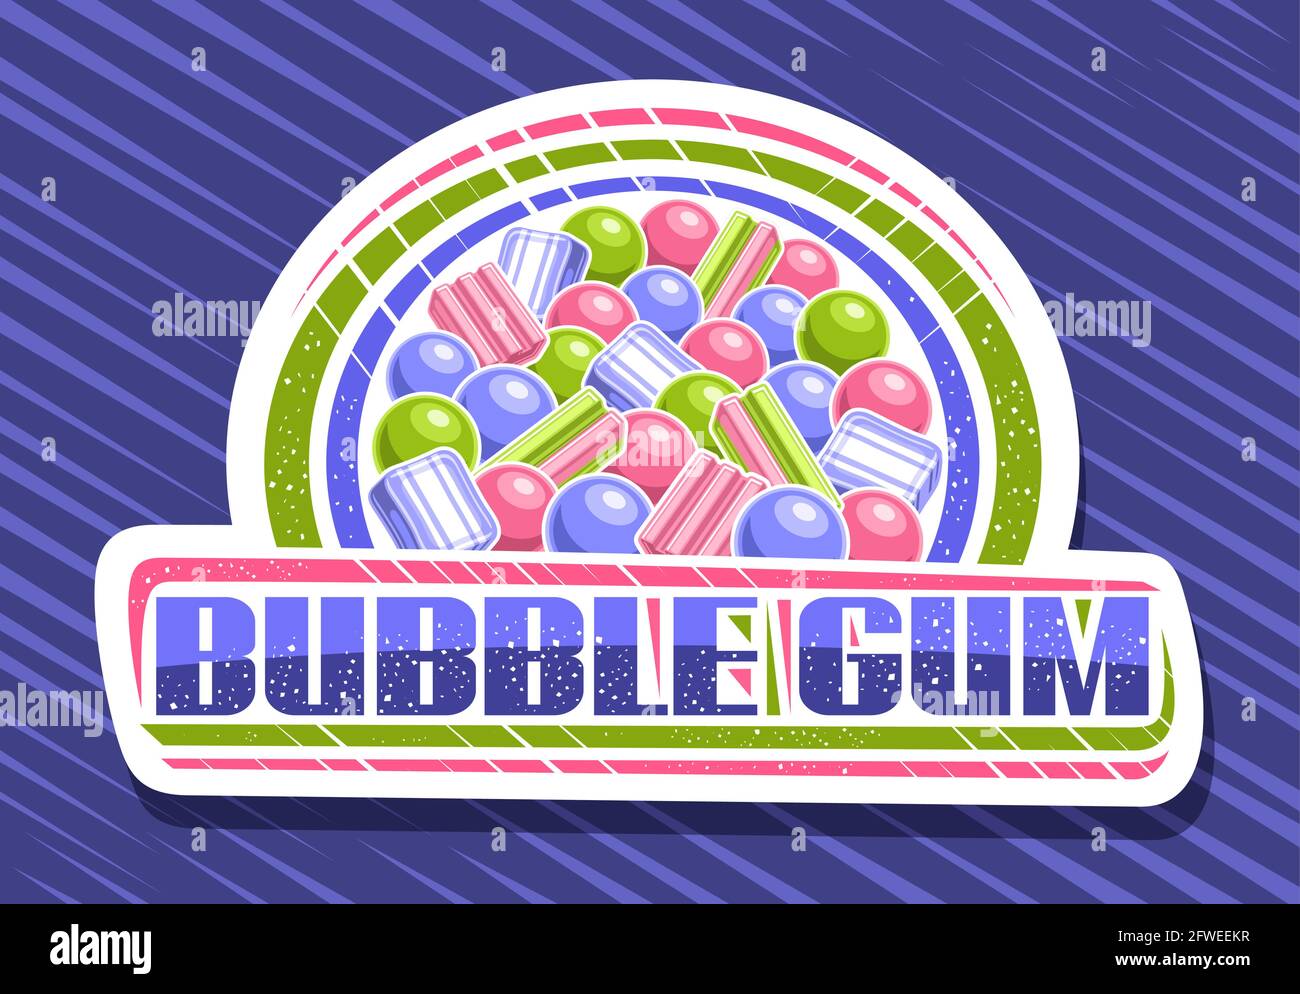 Vektor-Logo für Bubble Gum, dekorativ geschnittenes Papier-Schild mit Abbildung von verschiedenen bunten Bubblegums und Süßigkeiten, weißes Abzeichen mit einzigartigem Pinsel Stock Vektor